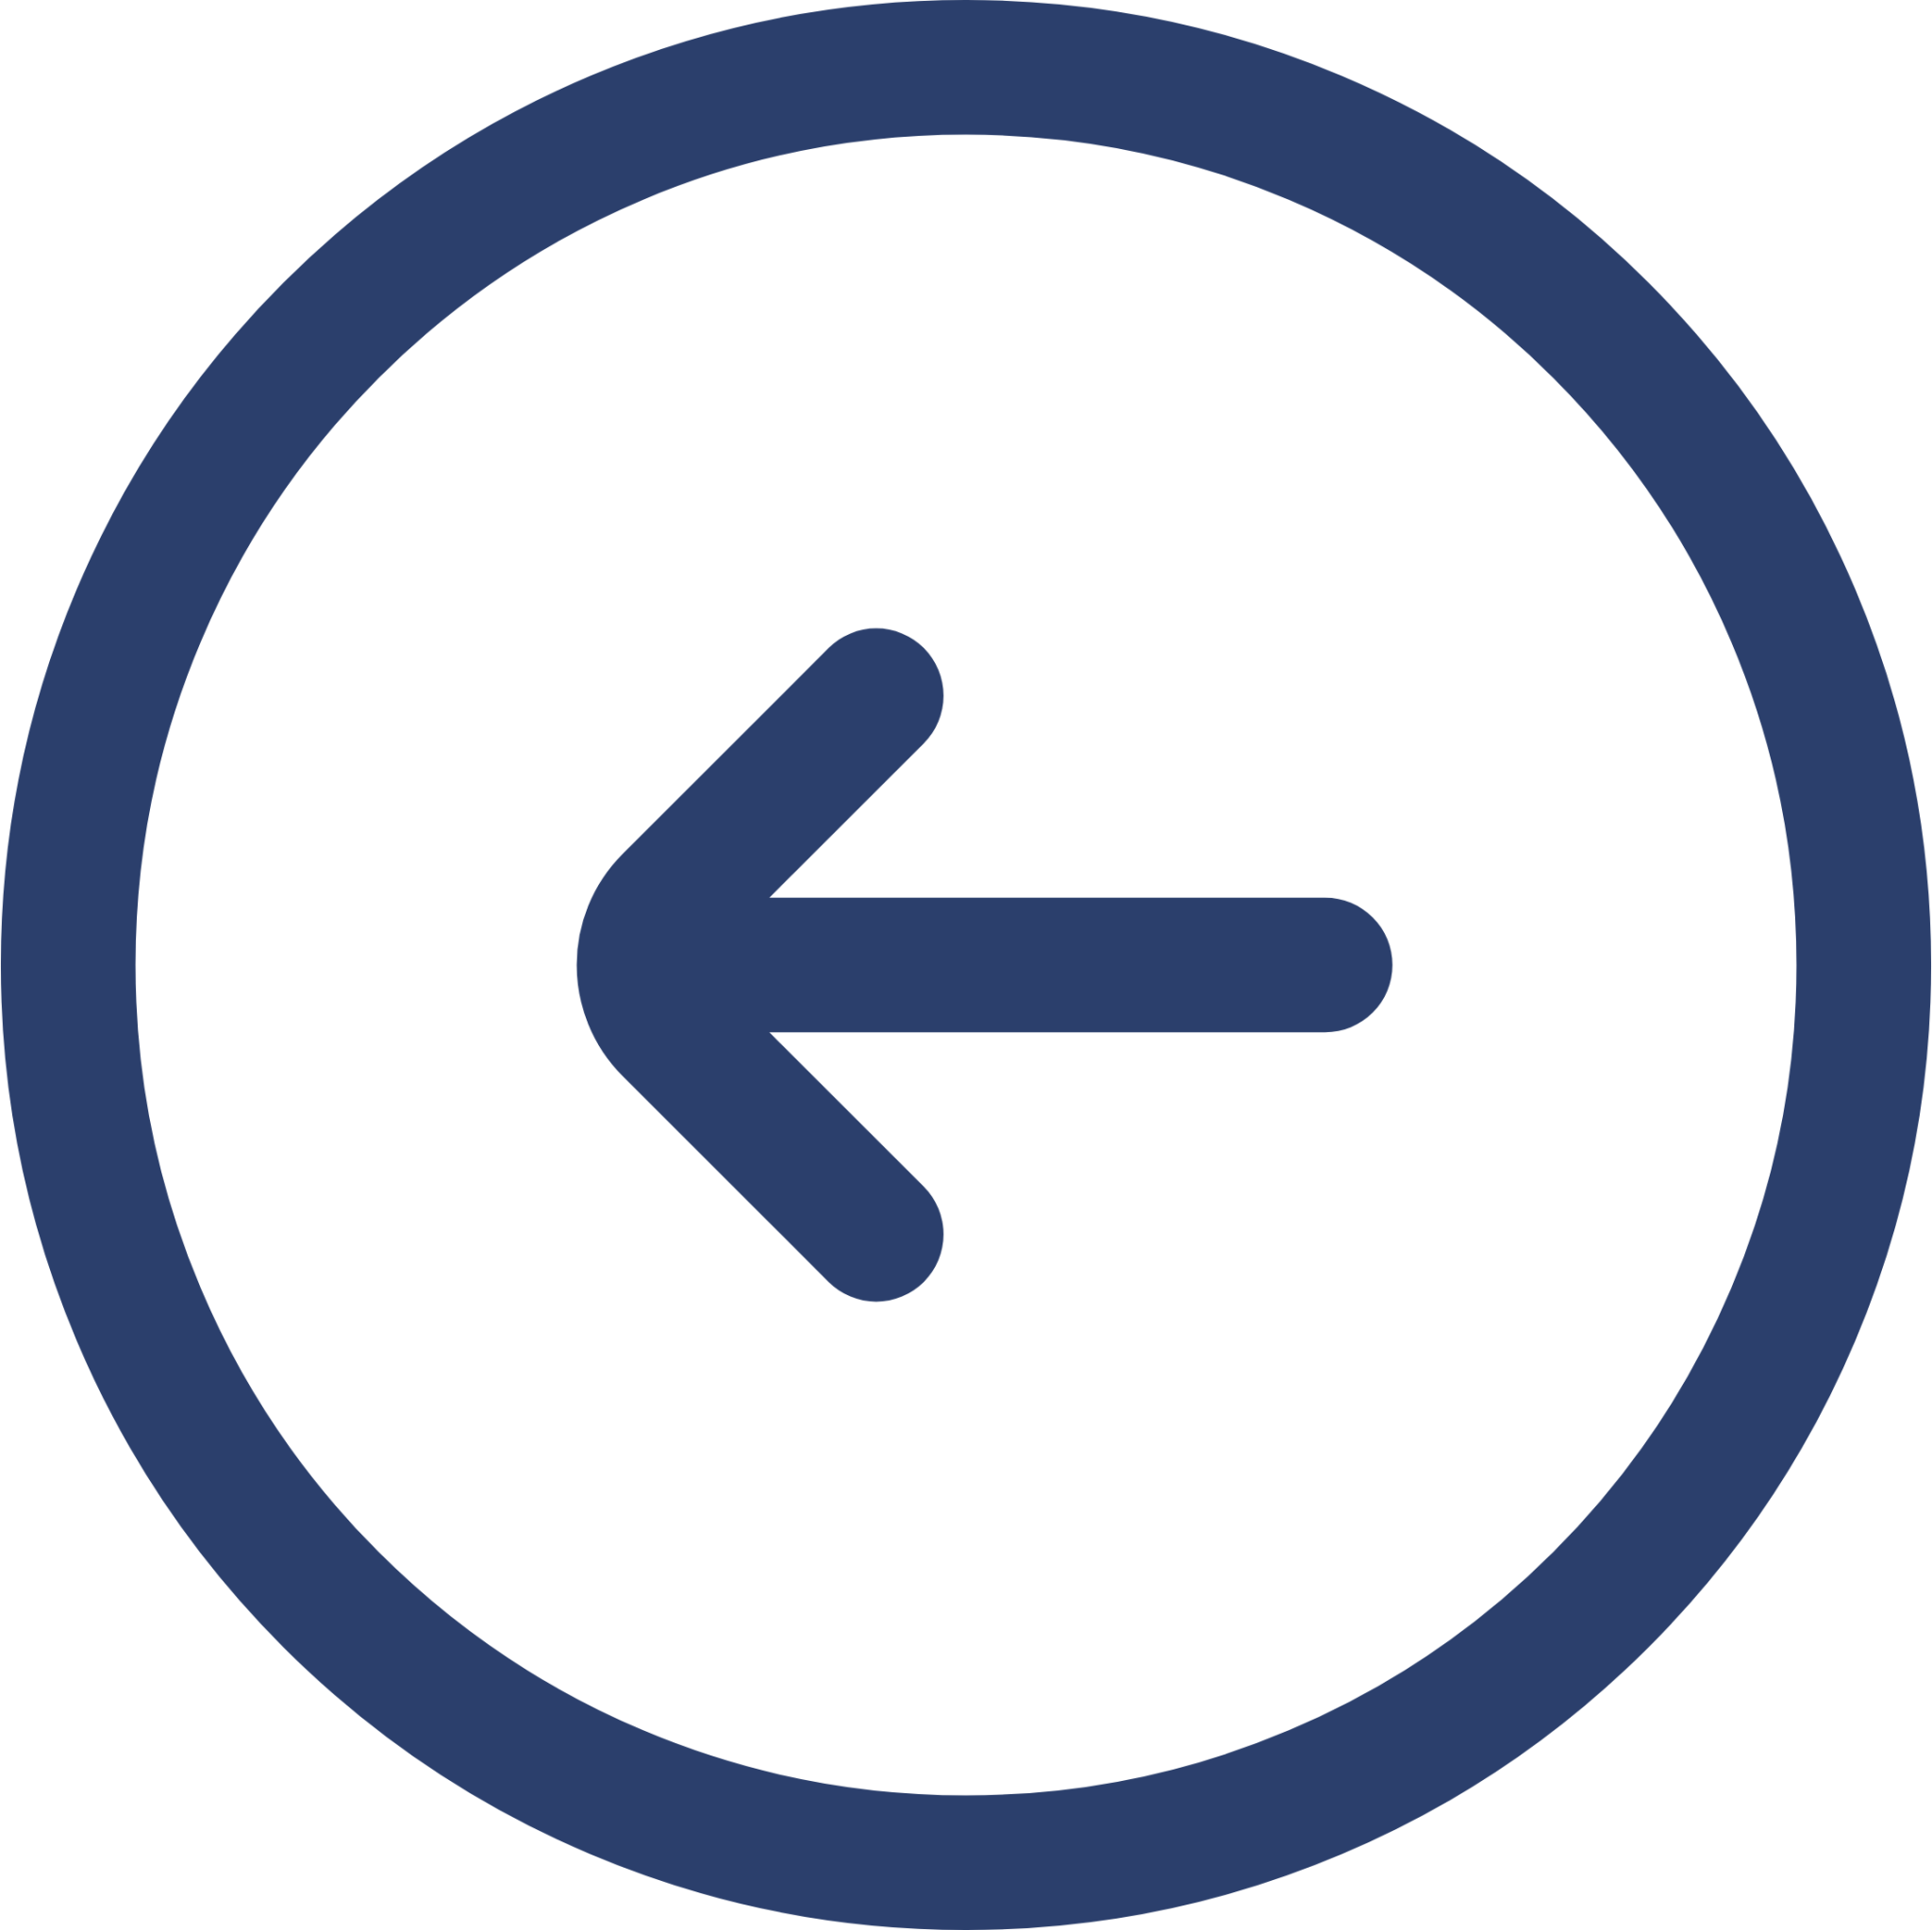 left circle icon